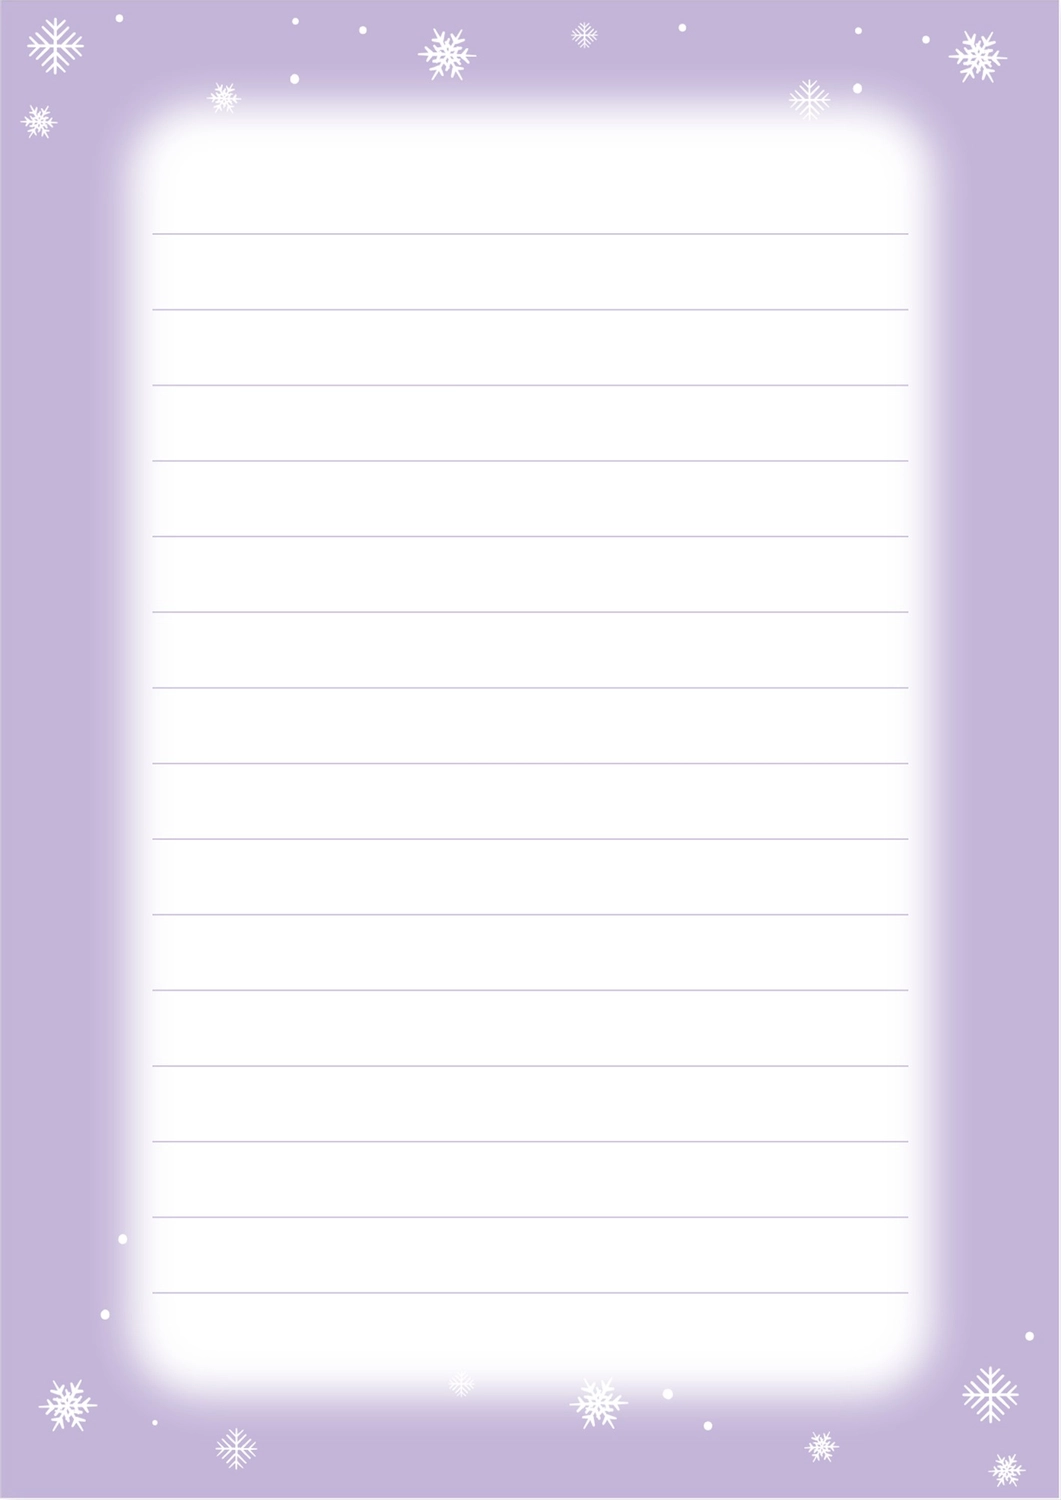 便箋（雪の結晶薄紫色フレーム）, シンプル, スッキリ, 絵ハガキ, 便箋テンプレート